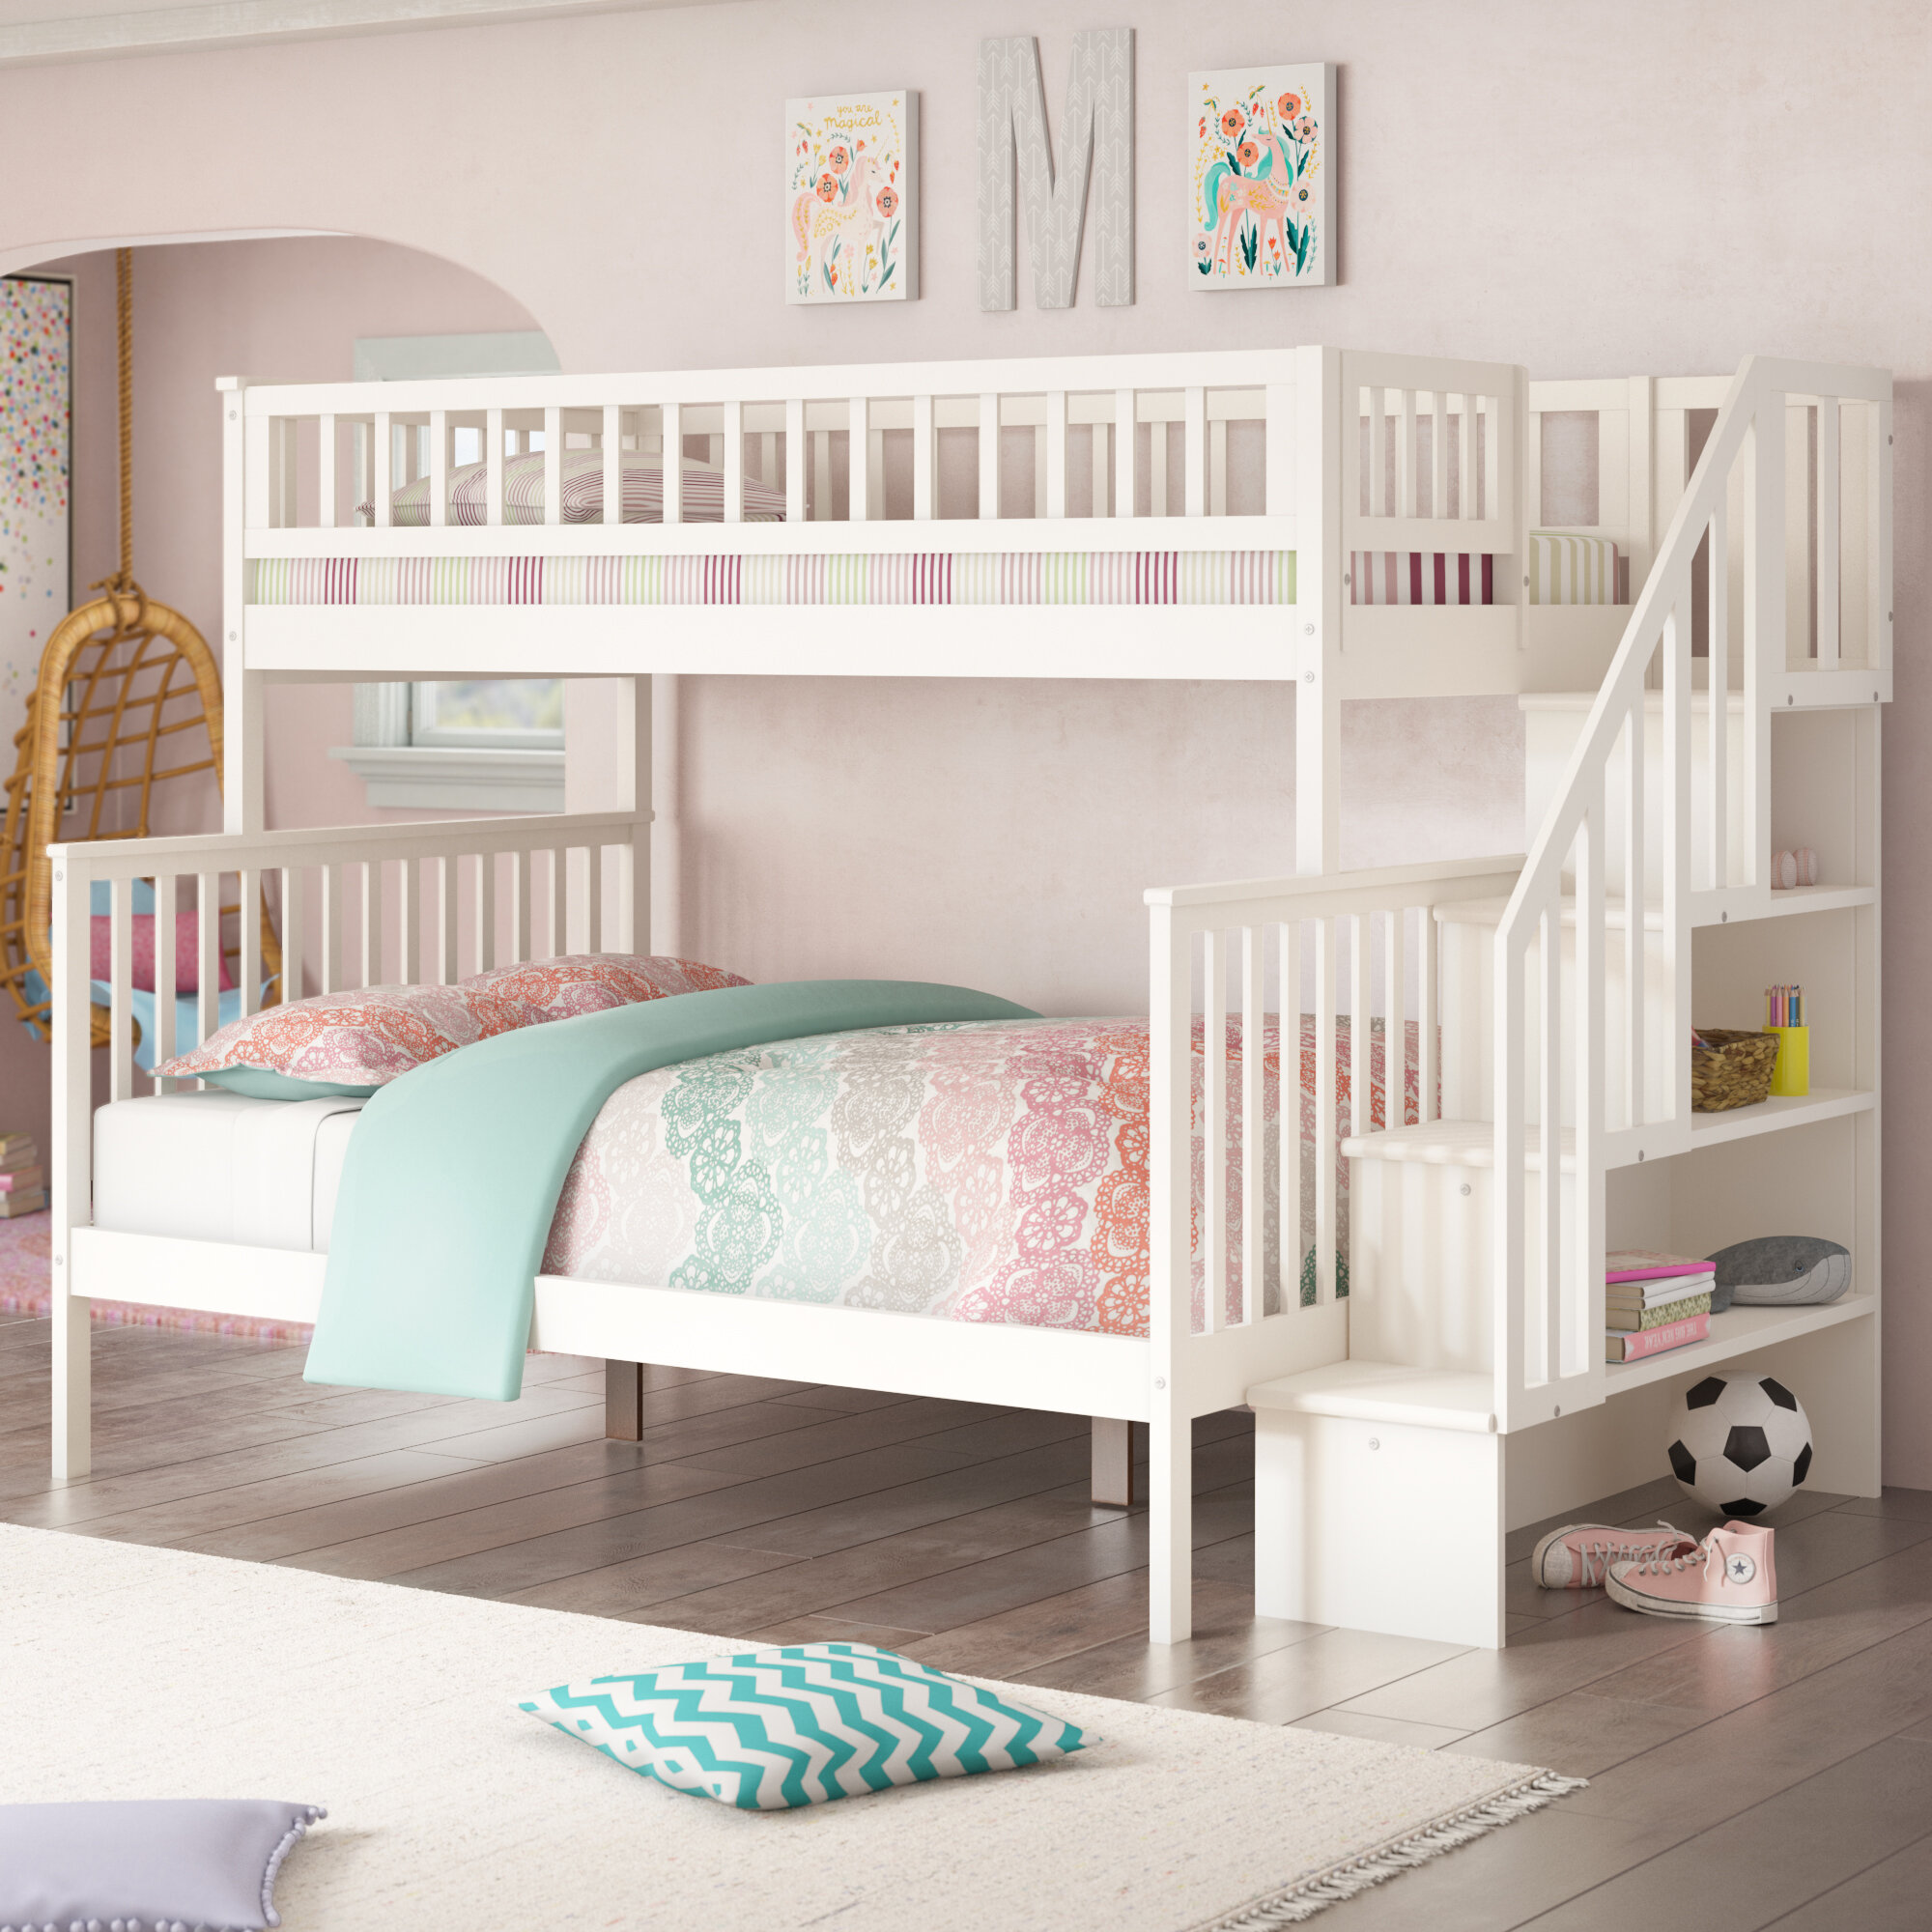 inexpensive children's bedroom furniture